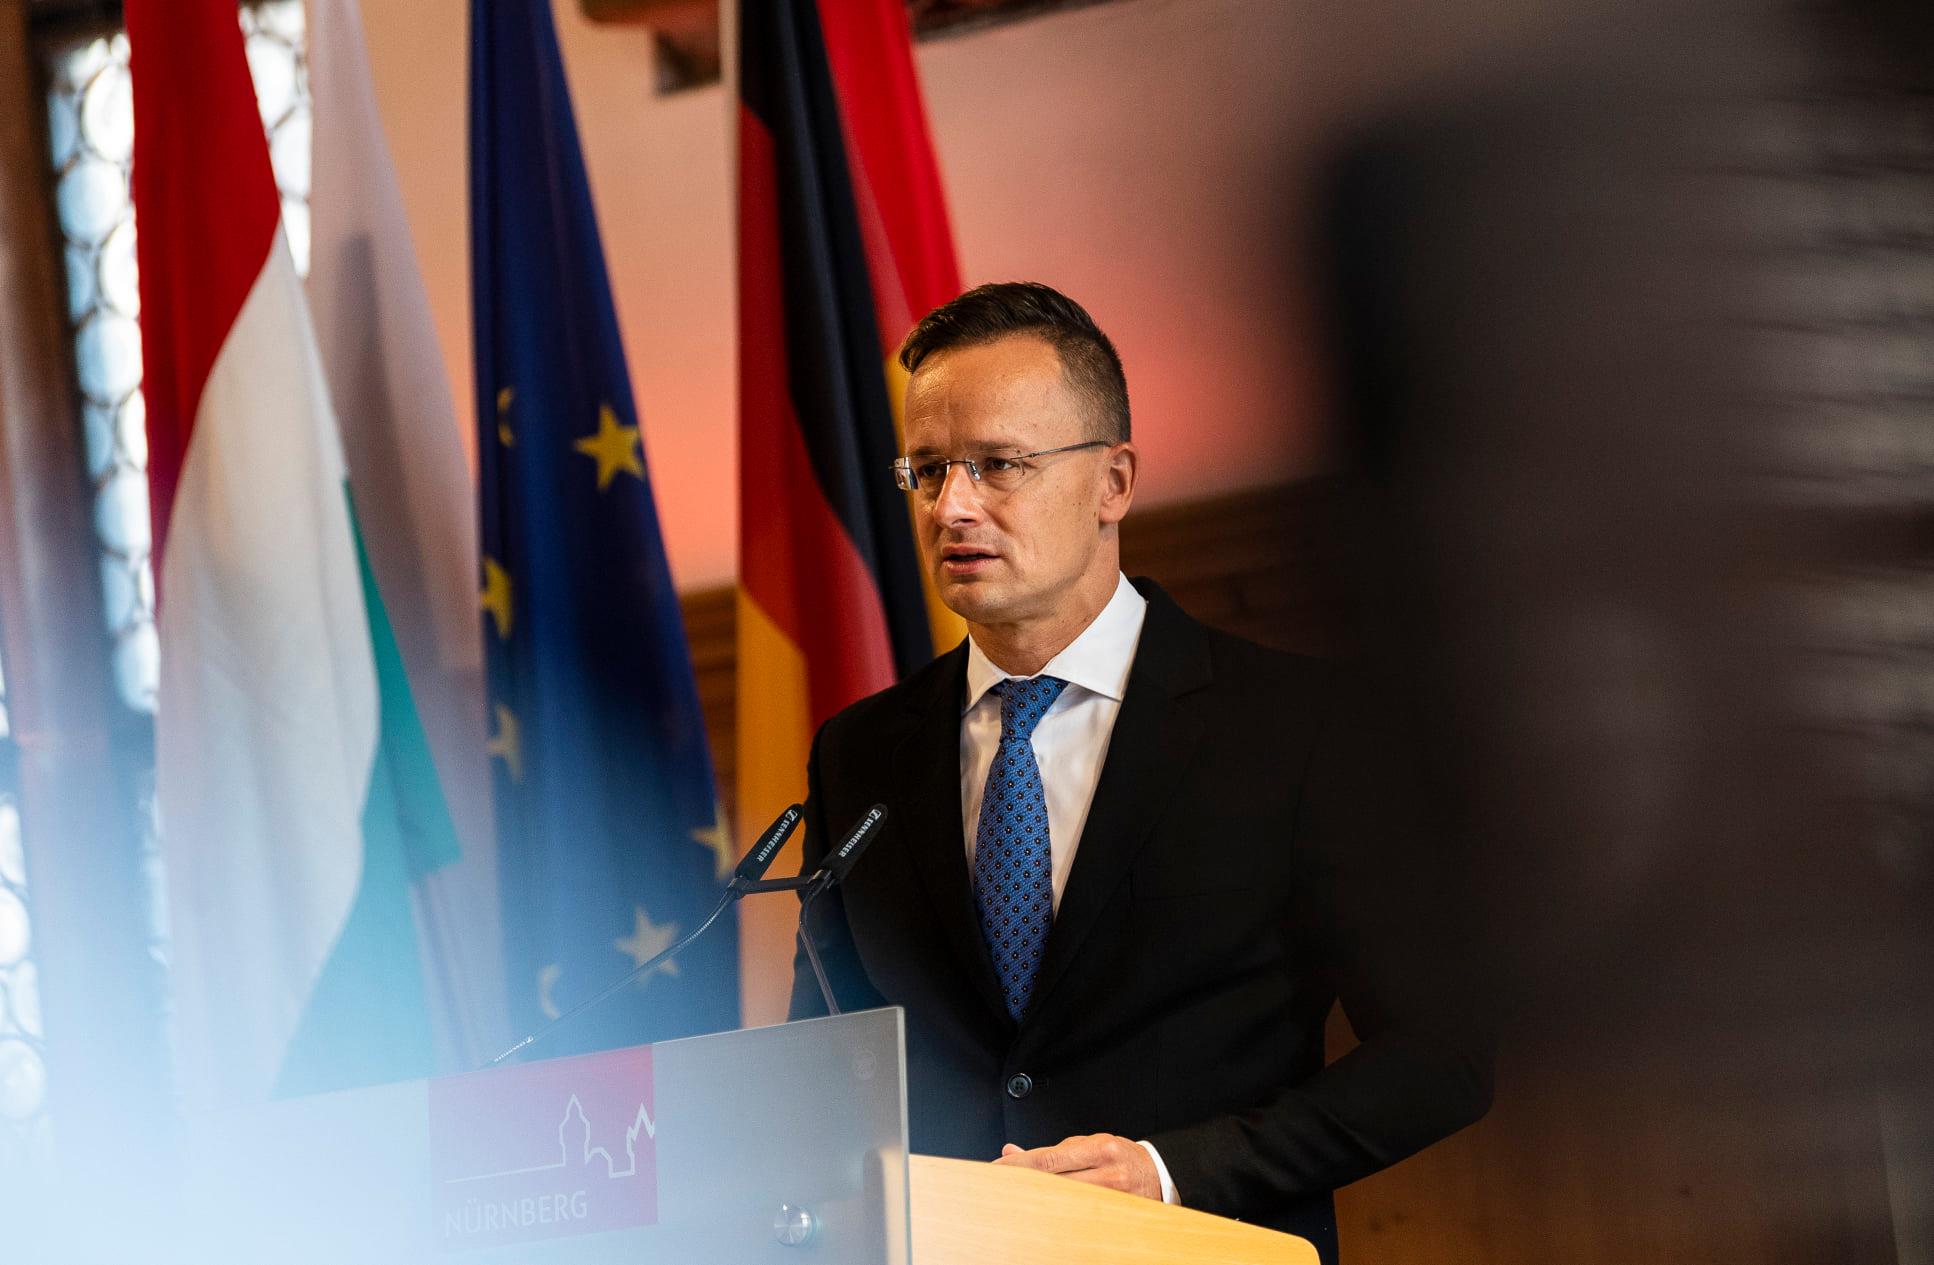 Maďarská diplomacie Německo